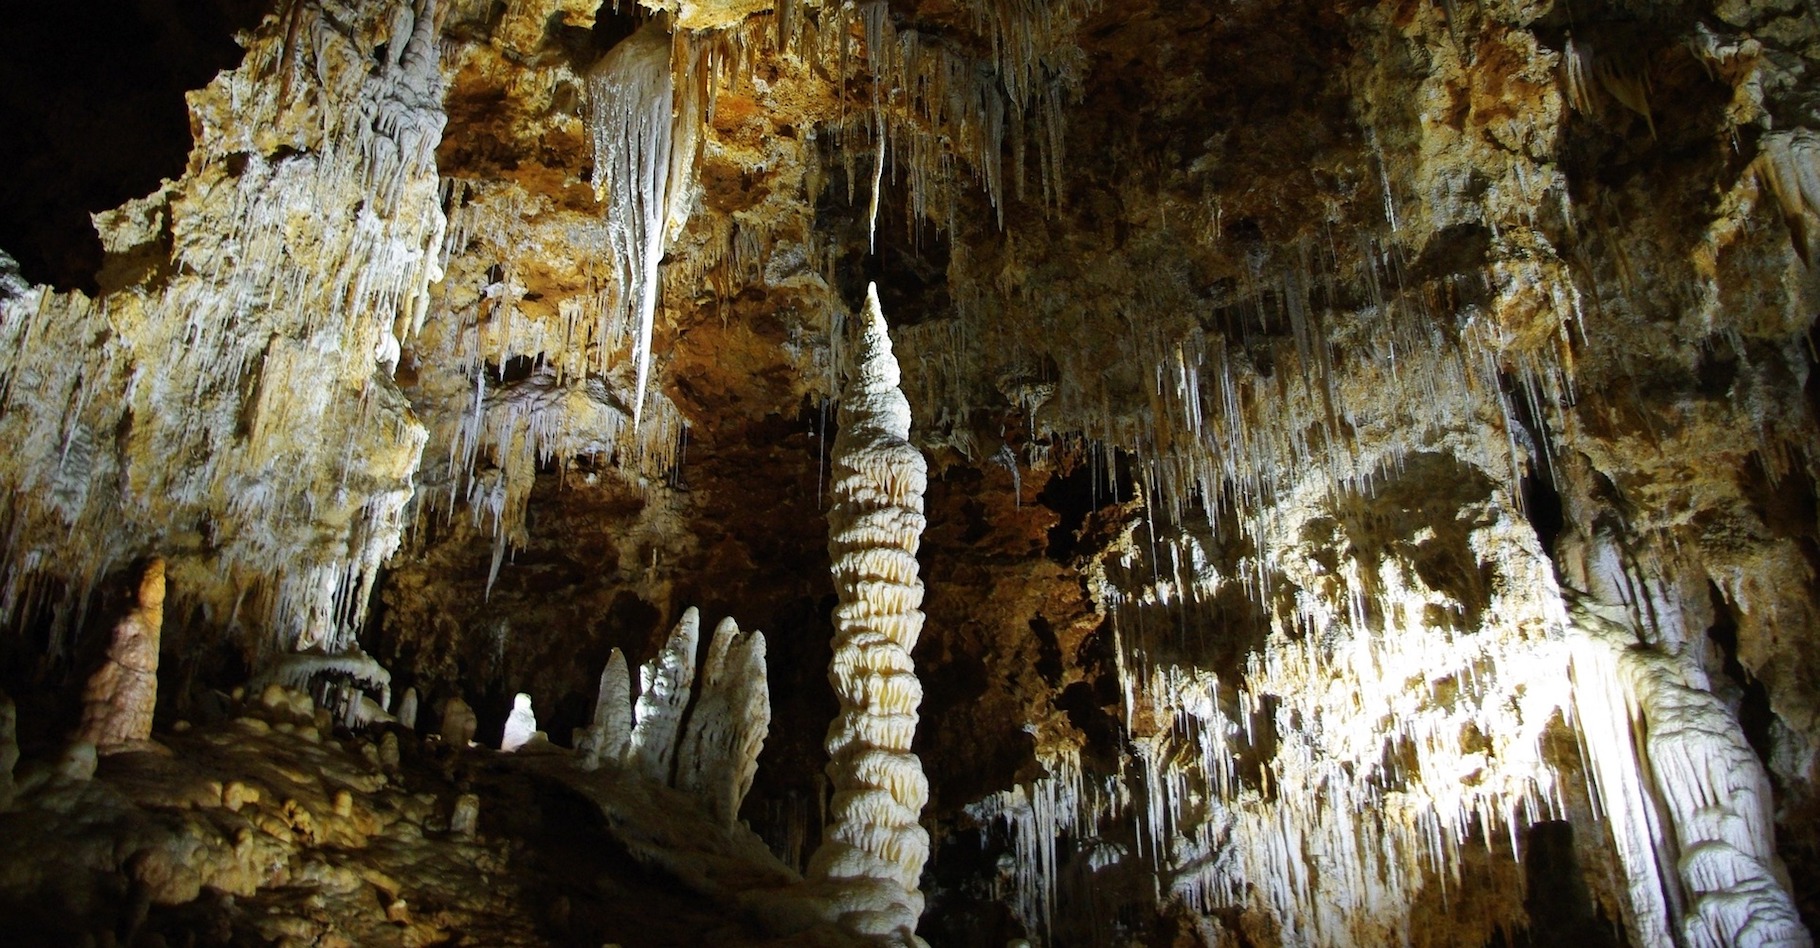 Une stalagmite est une formation calcaire qui apparaît sur le sol d’une grotte. © danydory, Pixabay, CC0 Creative Commons